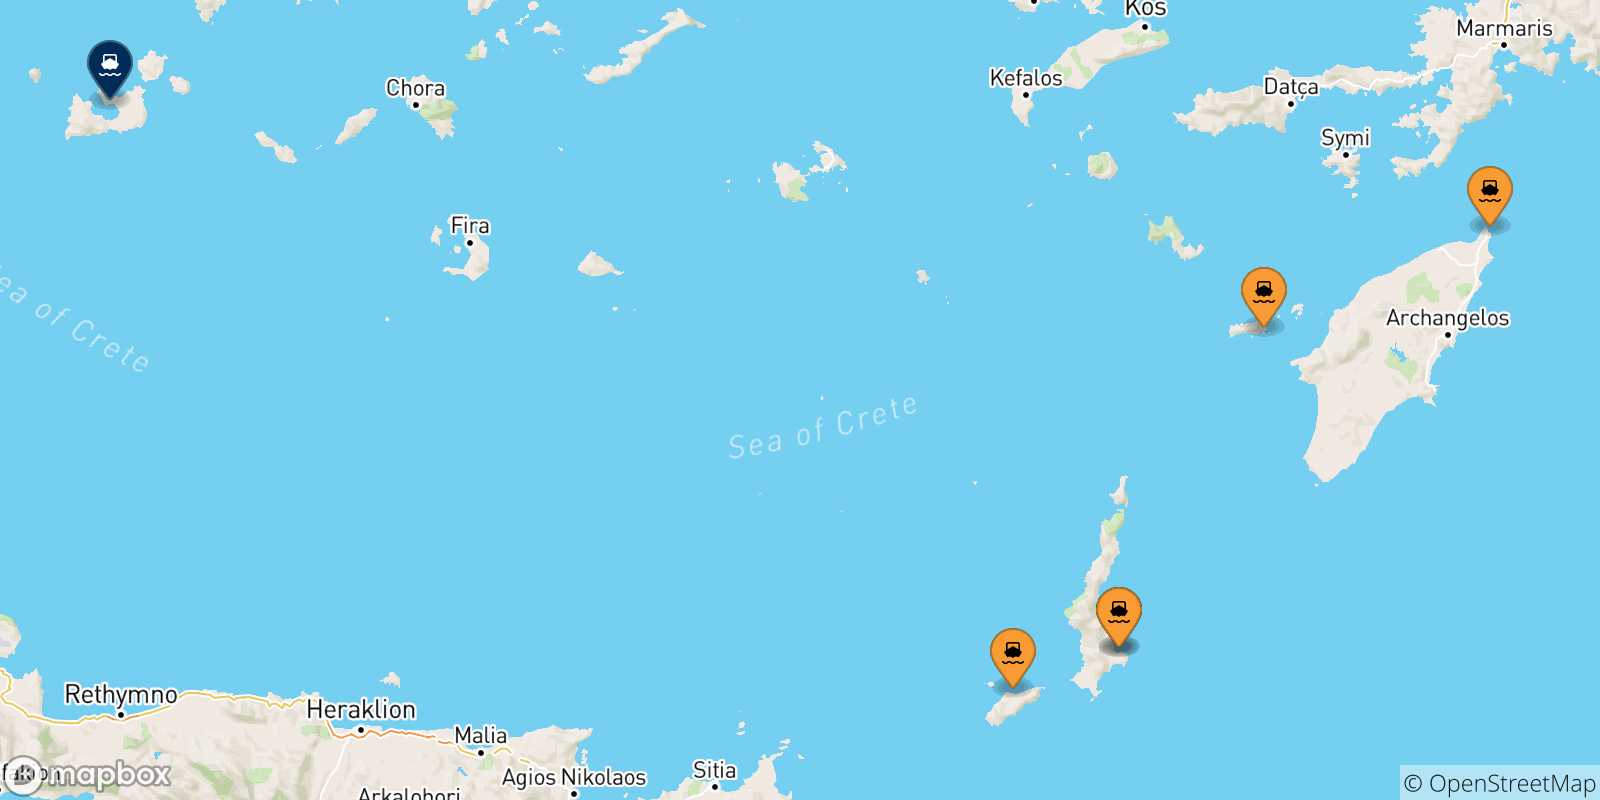 Mappa delle possibili rotte tra le Isole Dodecaneso e Milos